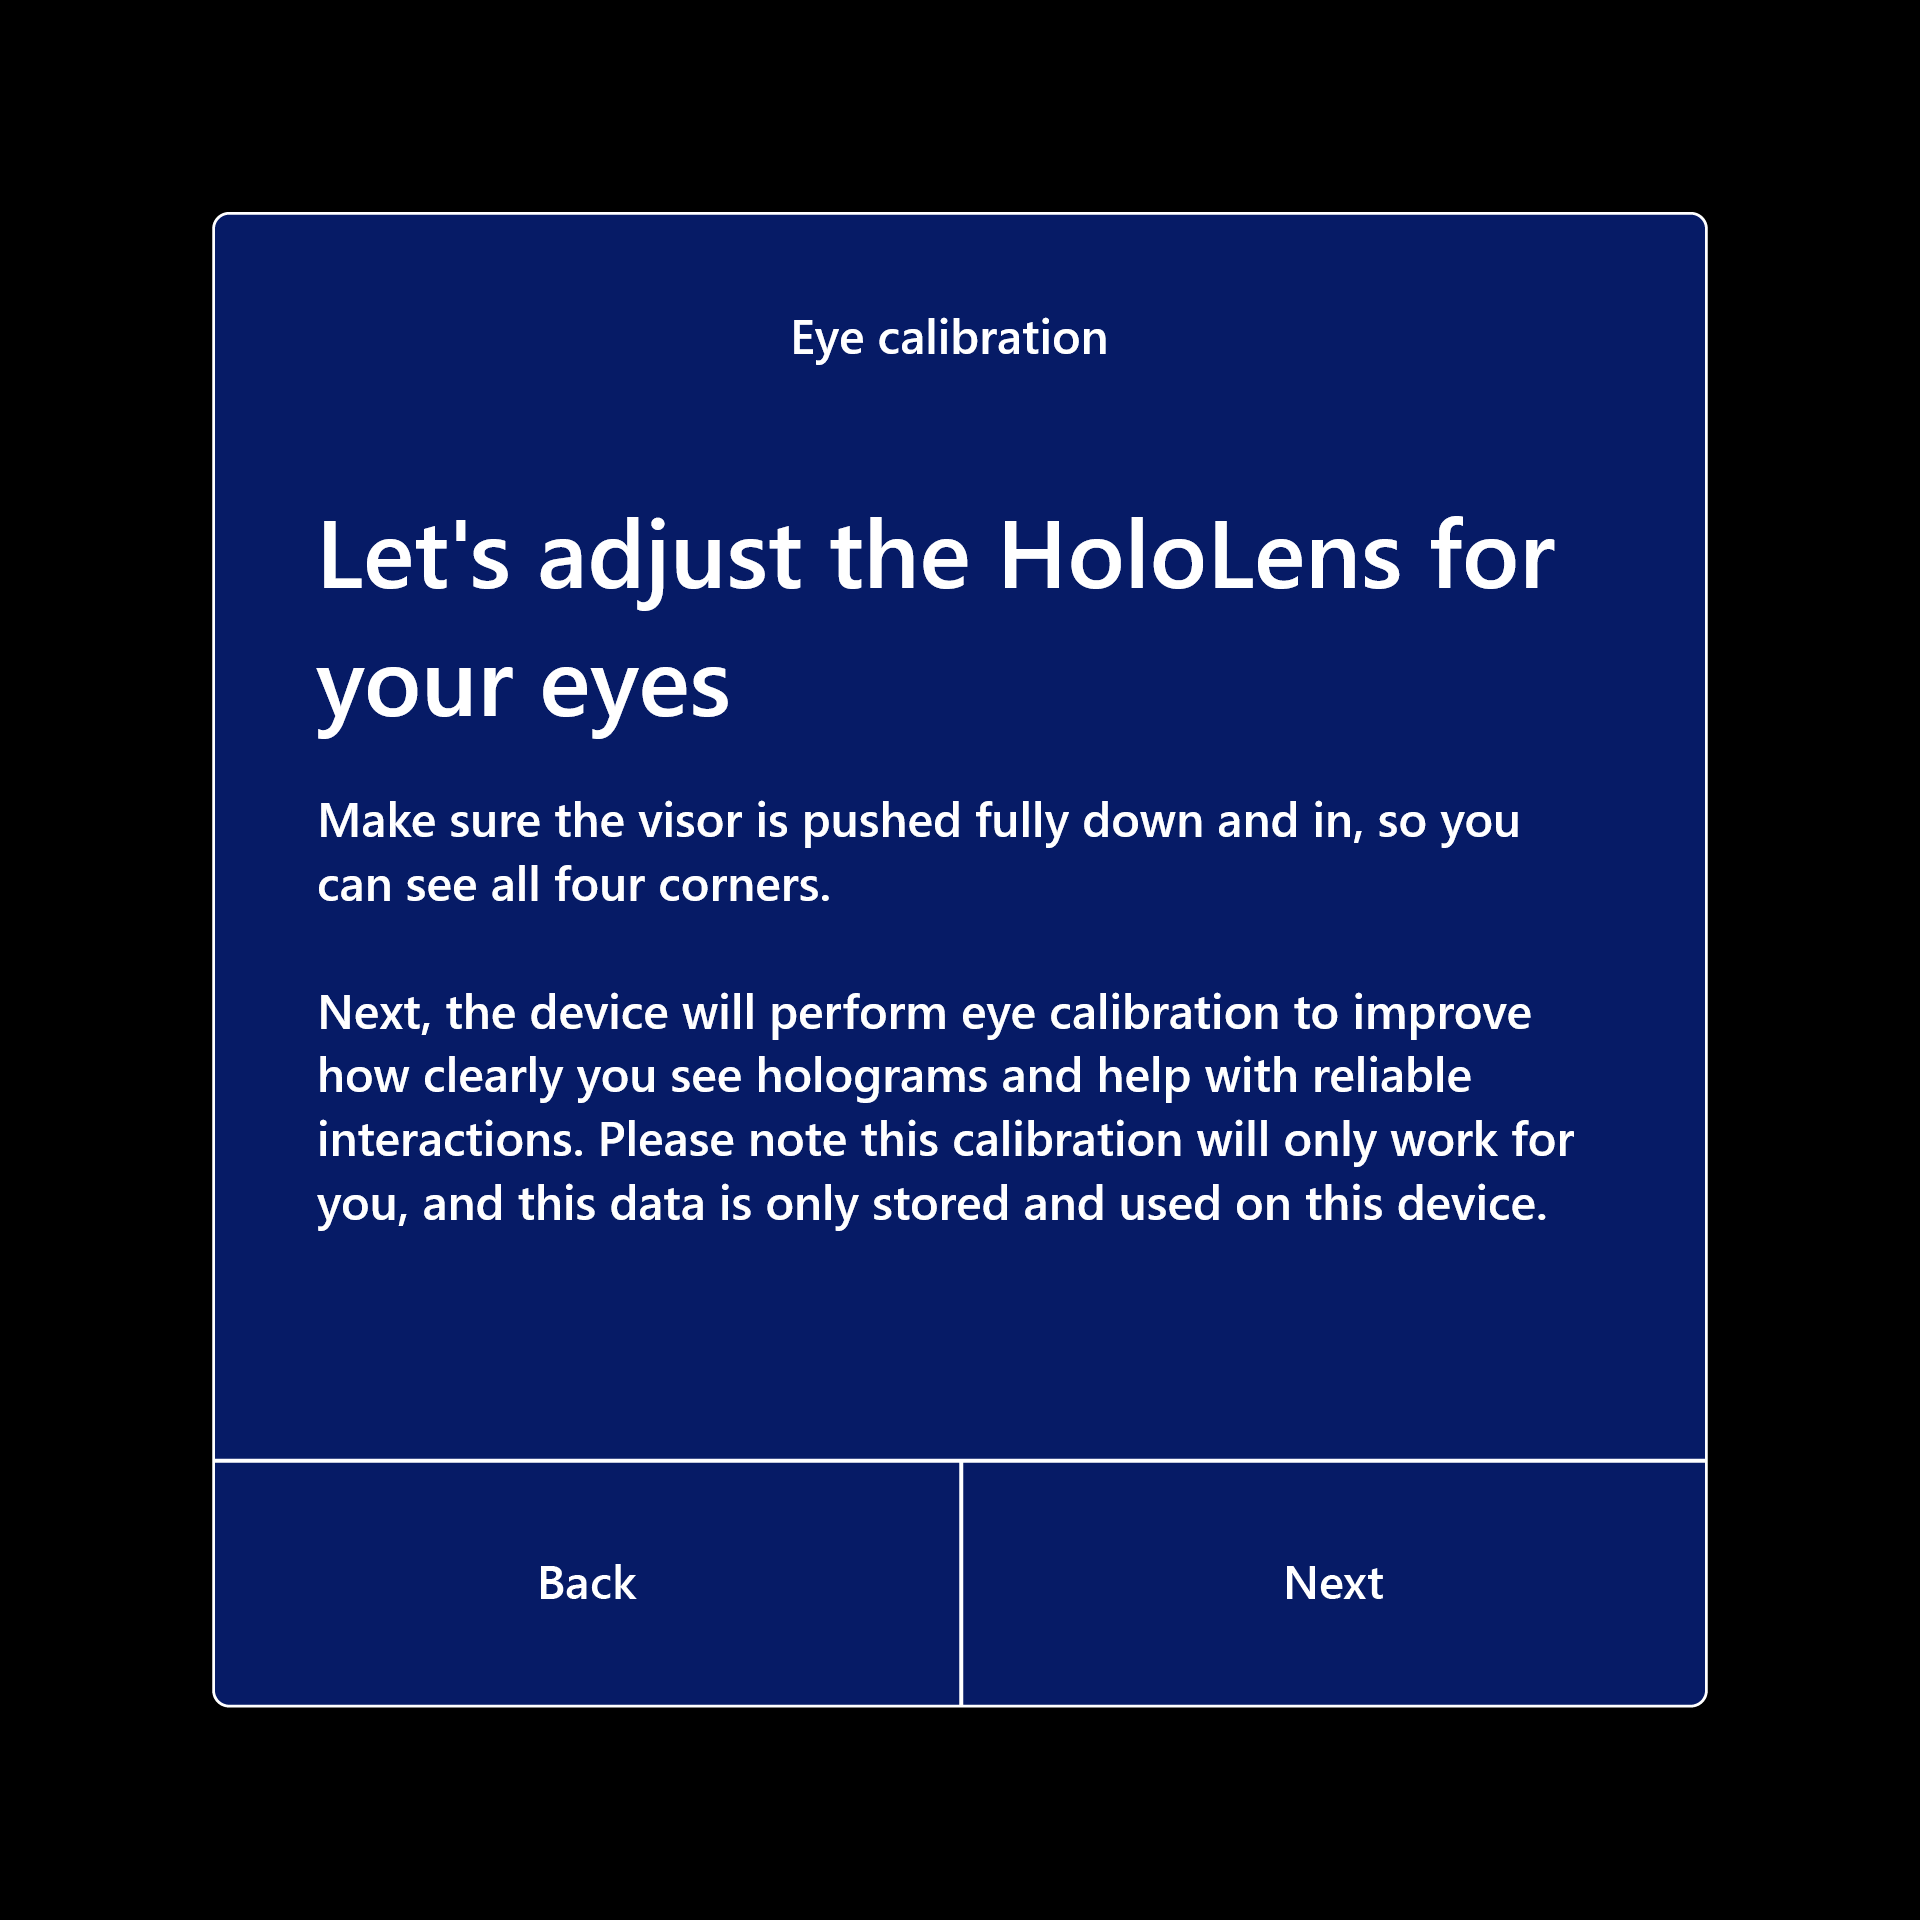 請為您的眼睛調整 HoloLens，以便繼續校正。